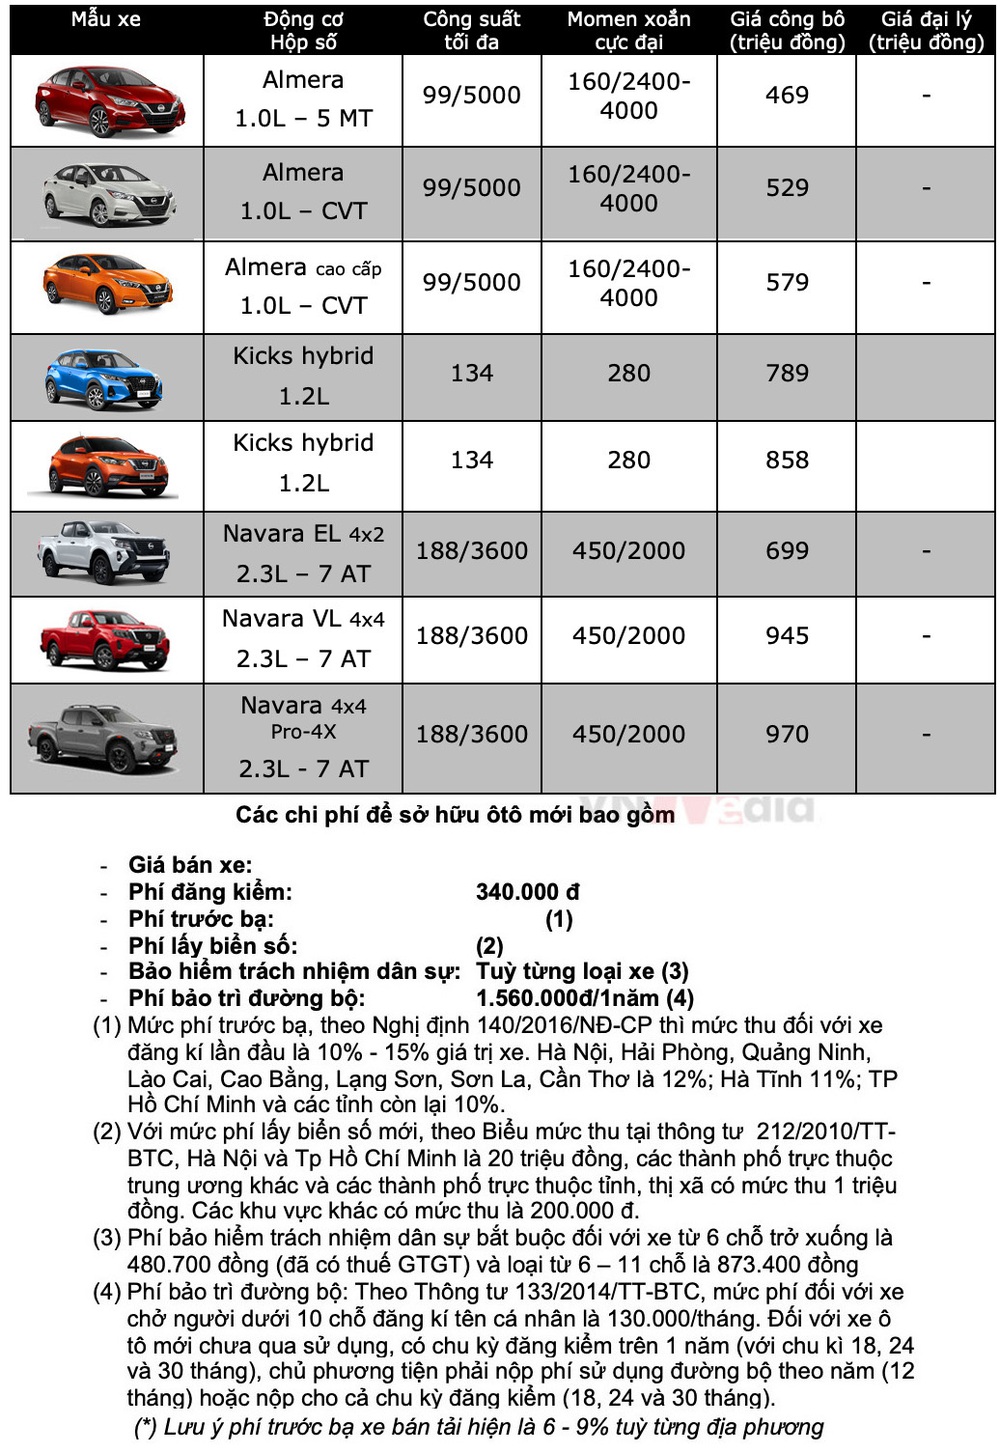 Bảng giá xe Nissan tháng 2: Nissan Almera tiếp tục được hỗ trợ 100% lệ phí trước bạ - Ảnh 2.